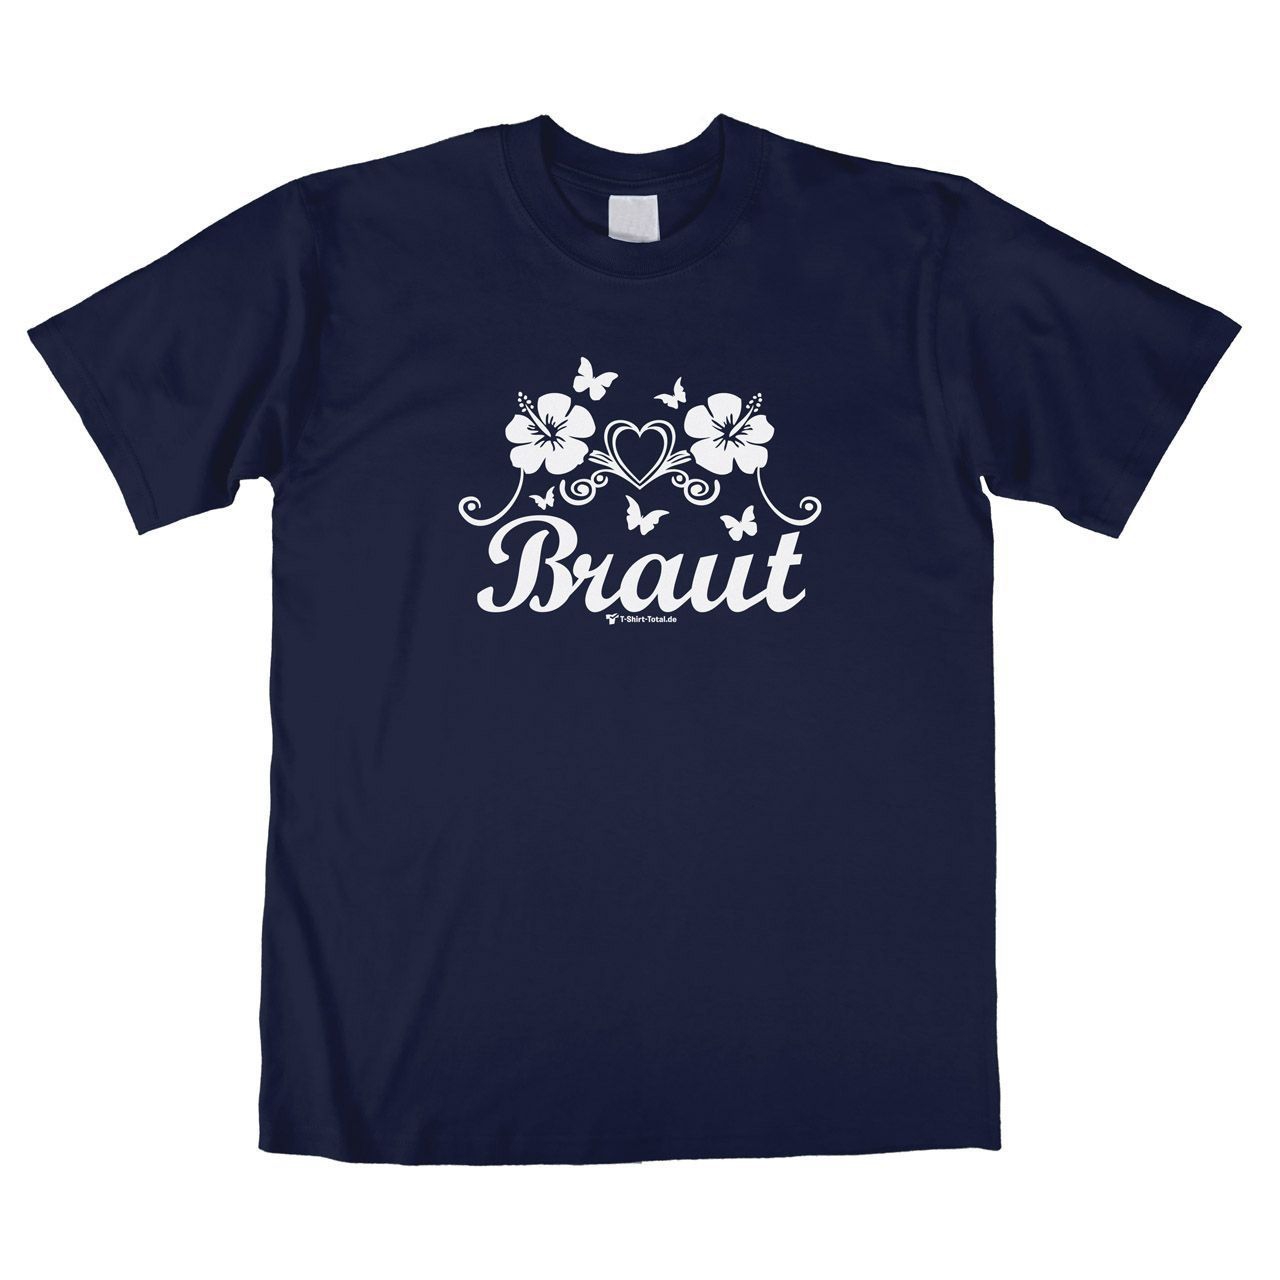 Die Braut Unisex T-Shirt navy Small